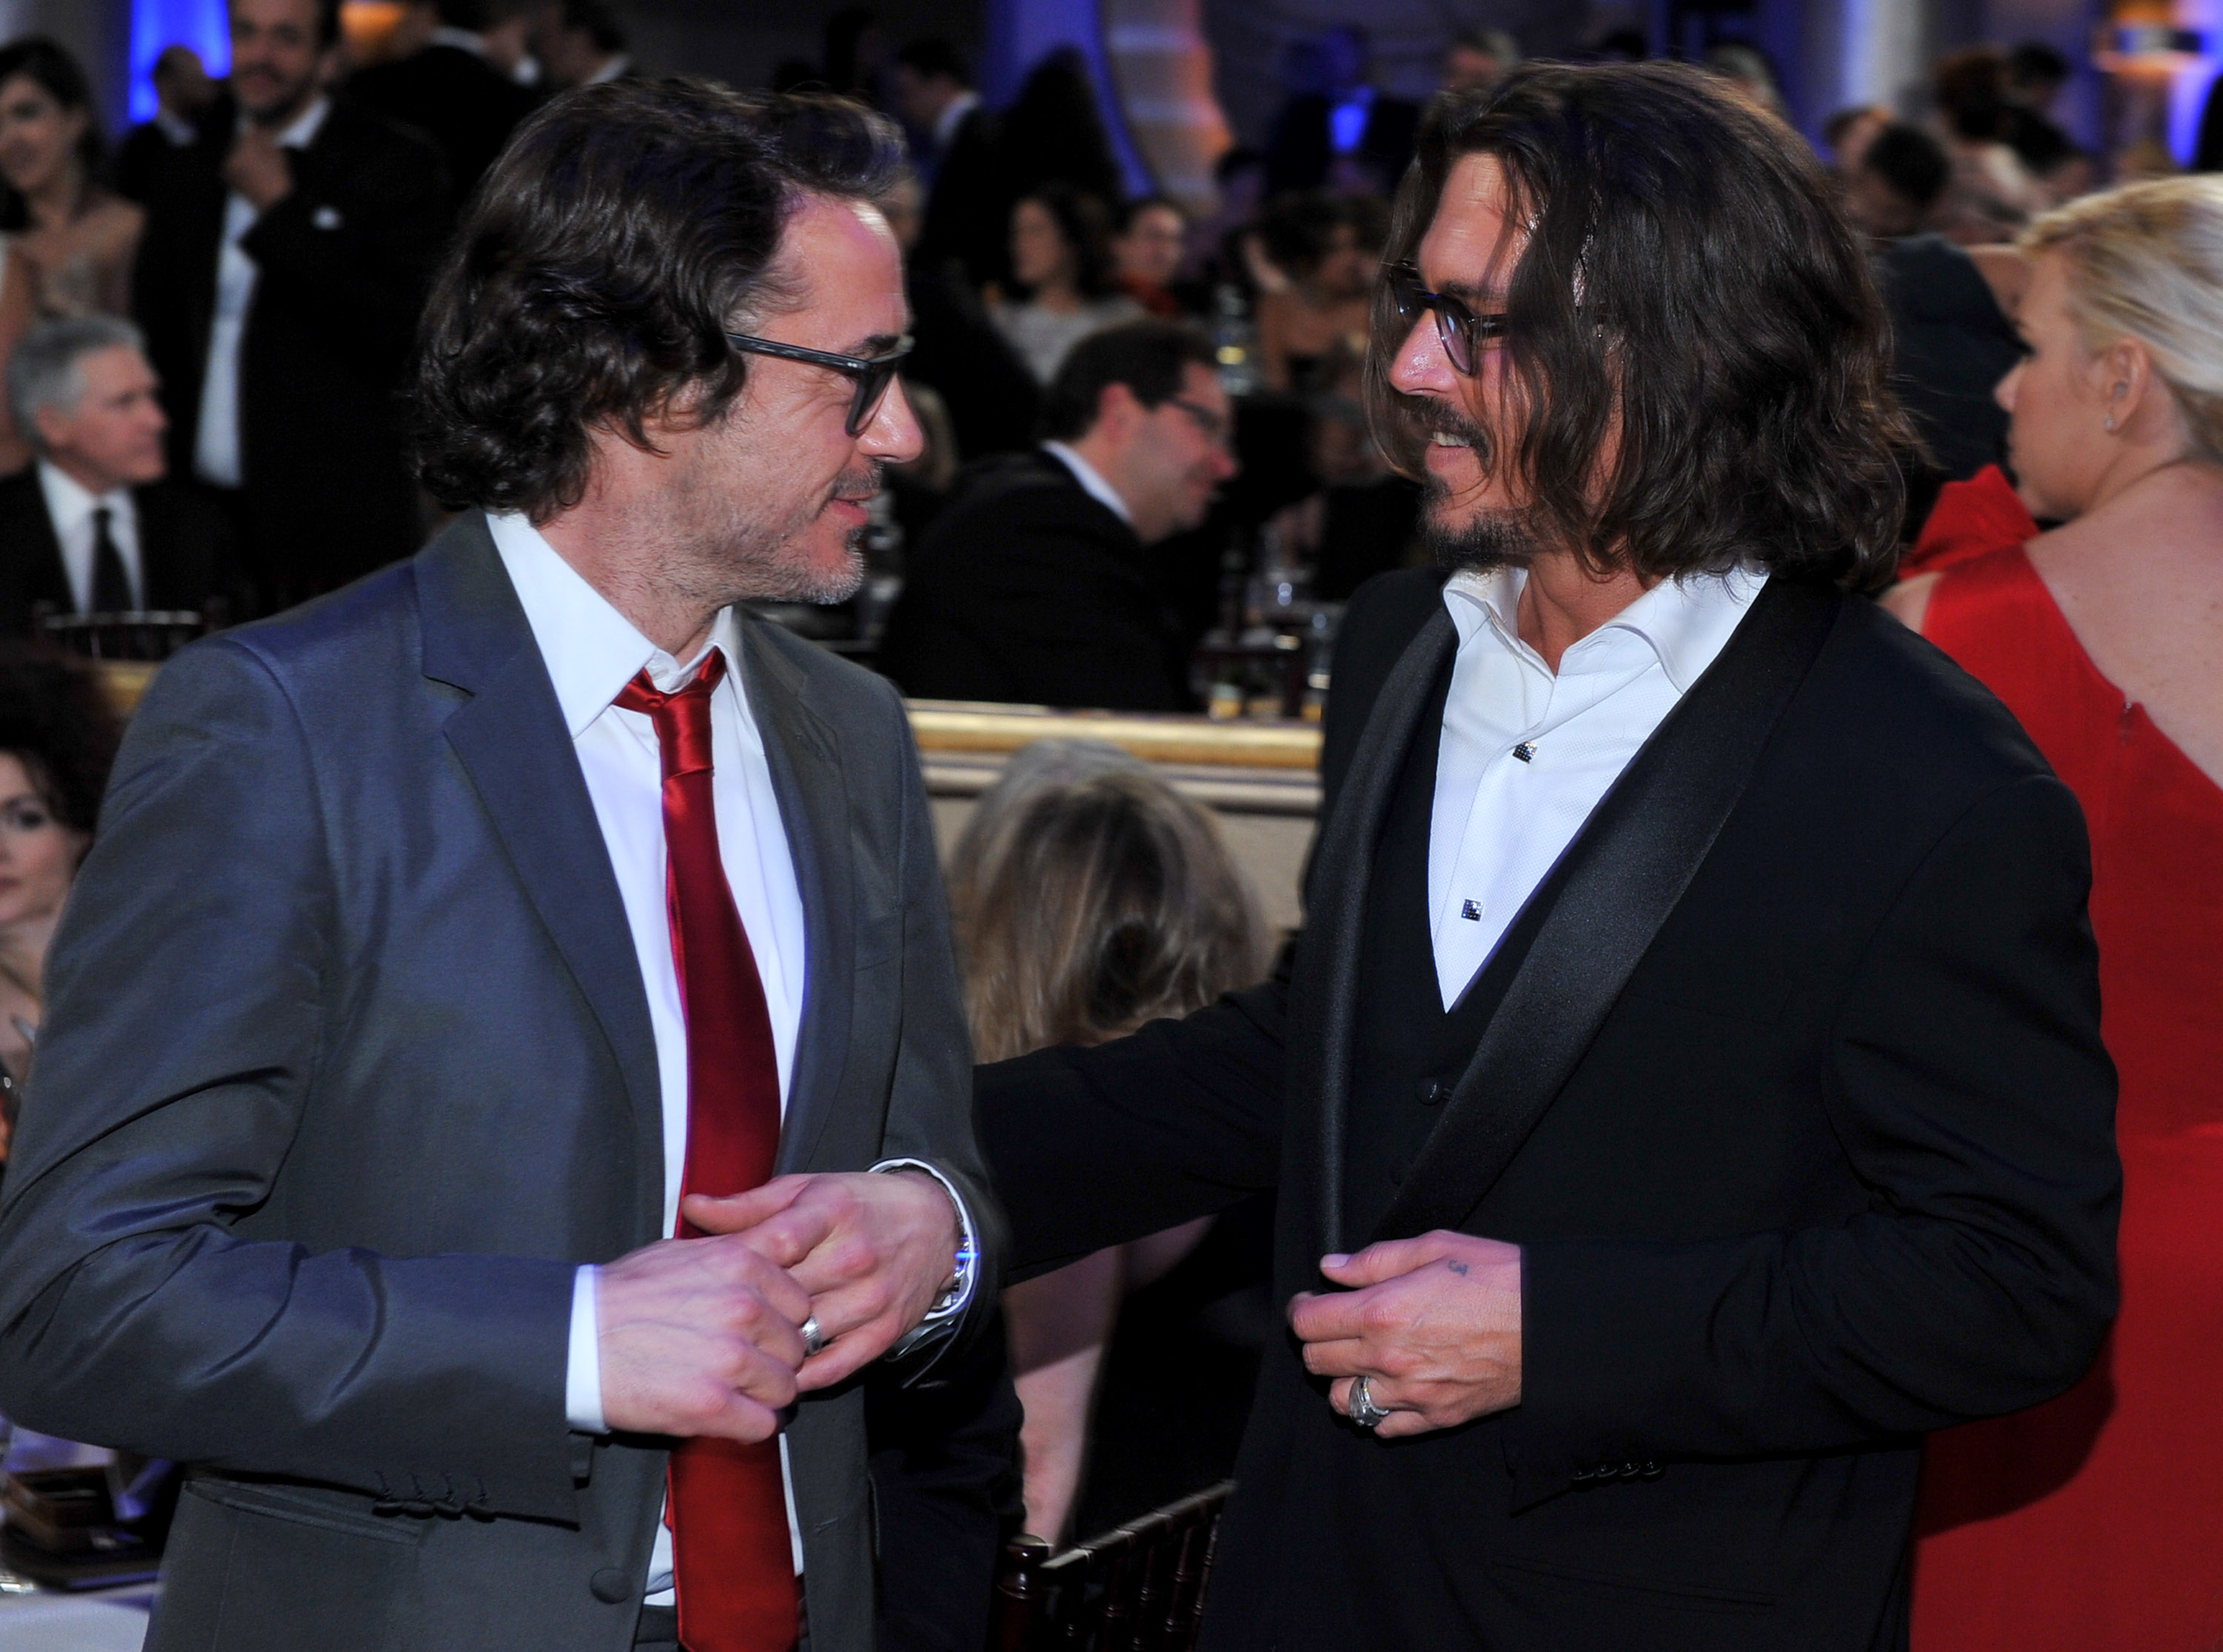 Closeup of Robert Downey Jr. and Johnny Depp